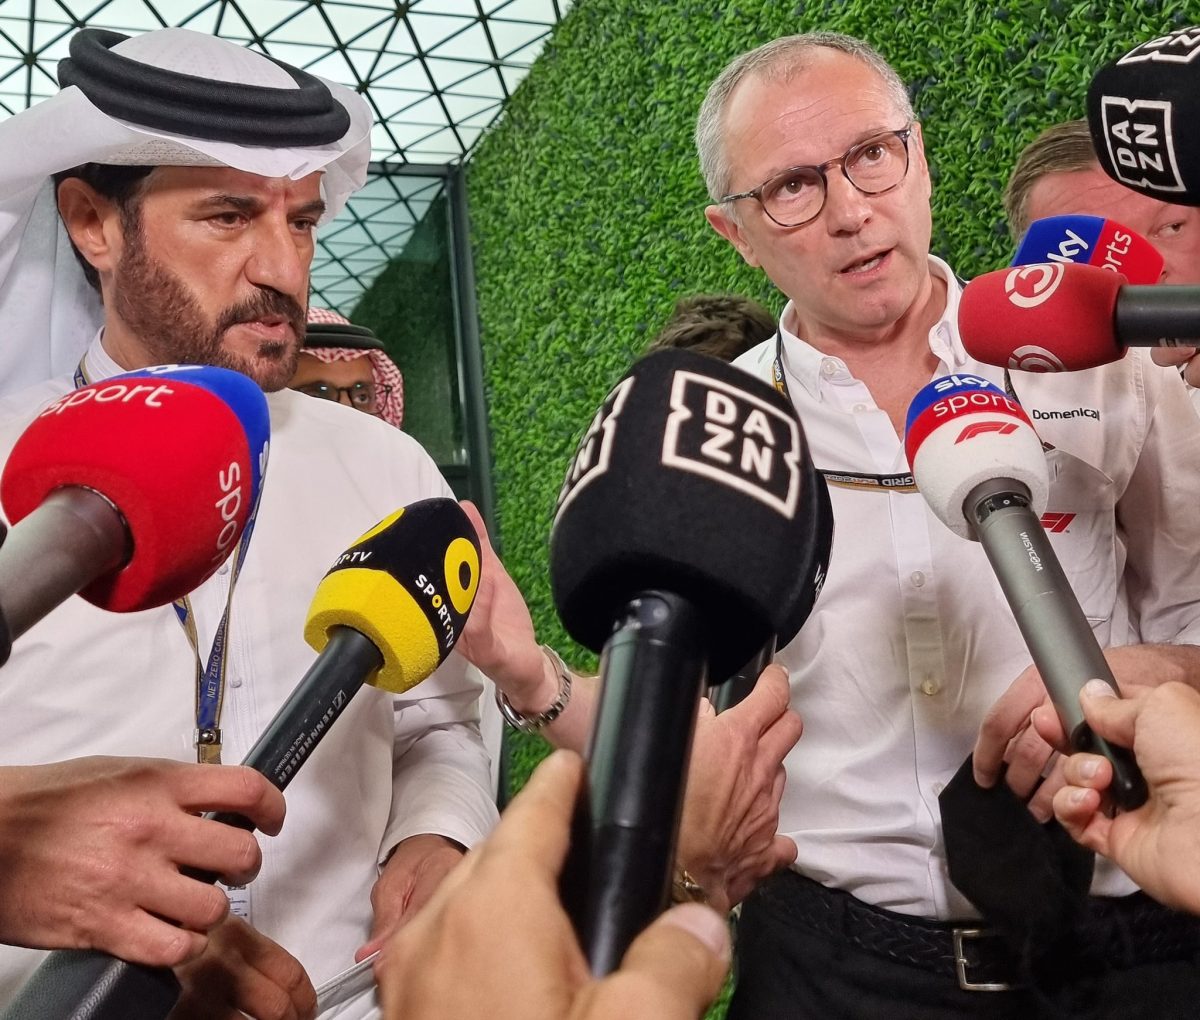 Luego de la reunión| El Gran Premio de Arabia Saudita sigue adelante